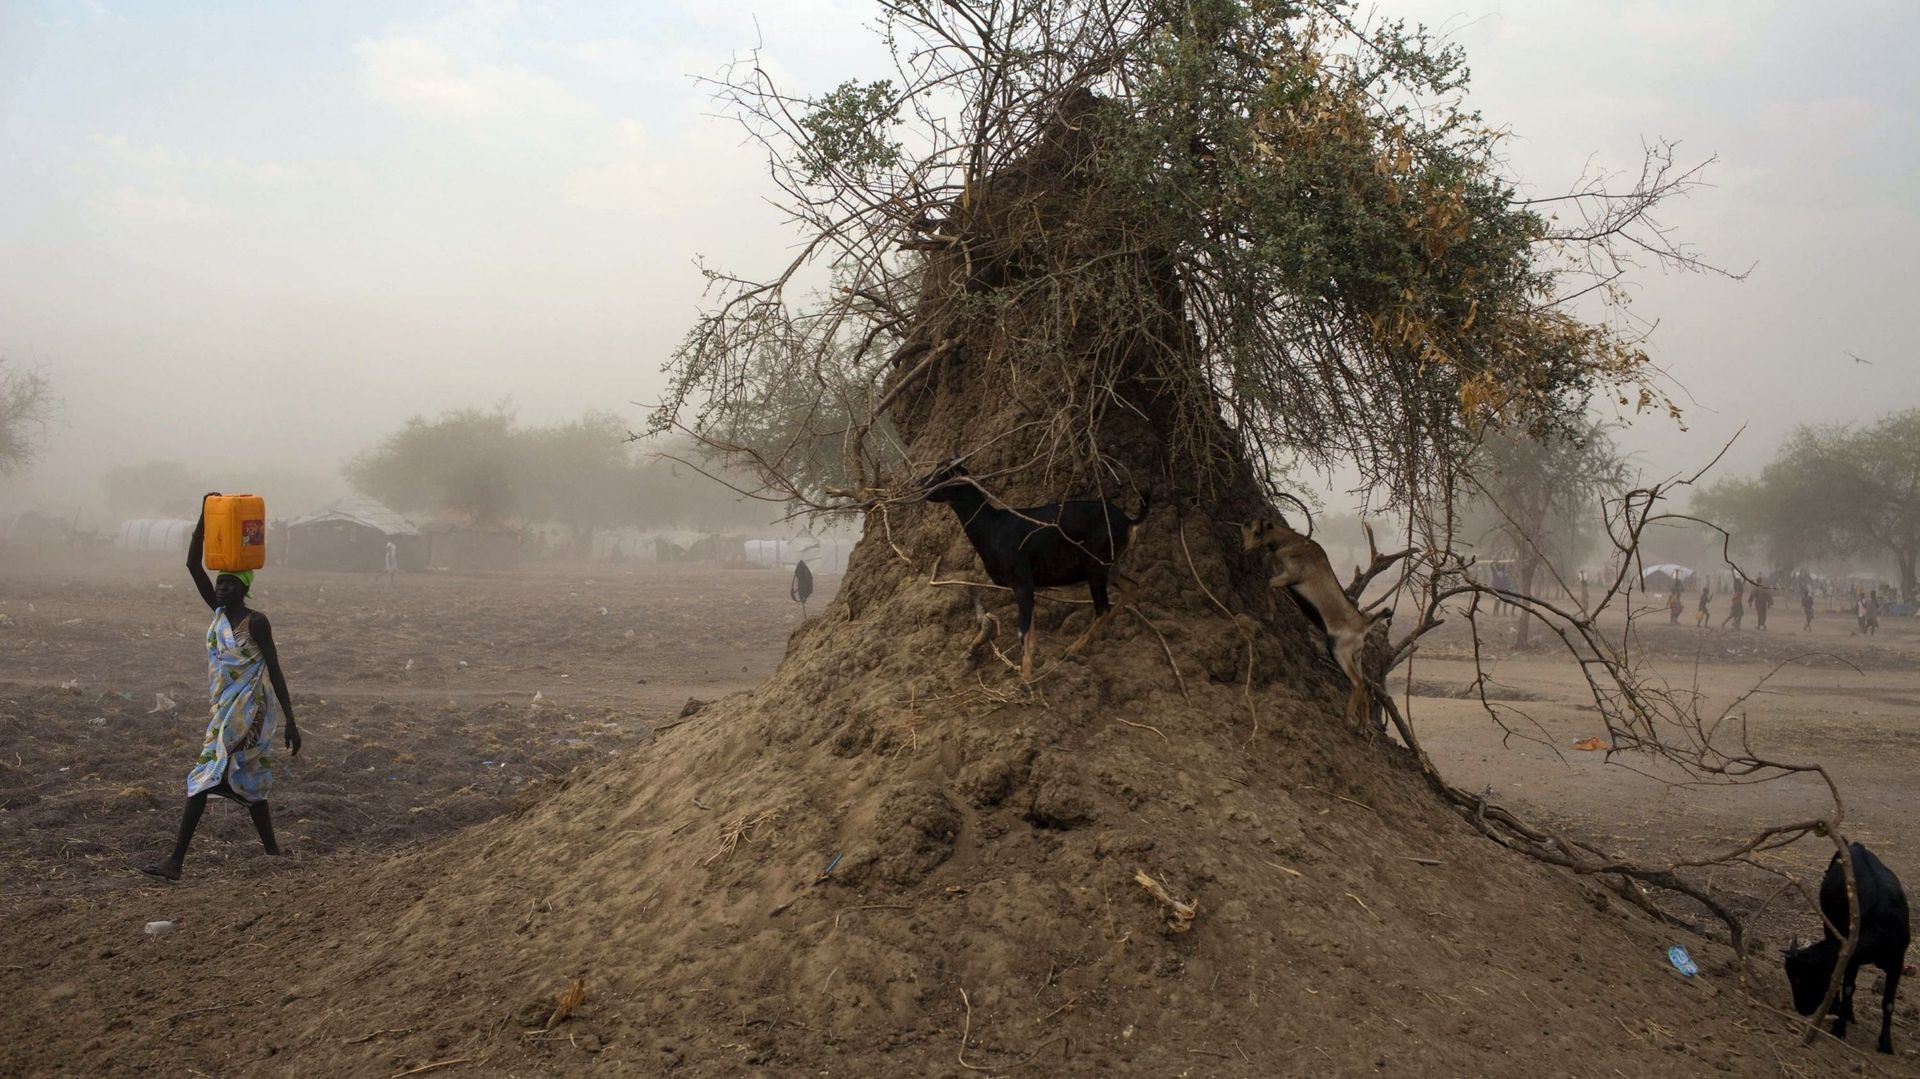 Soudan du Sud: des enfants mangent "de l’herbe et des racines"